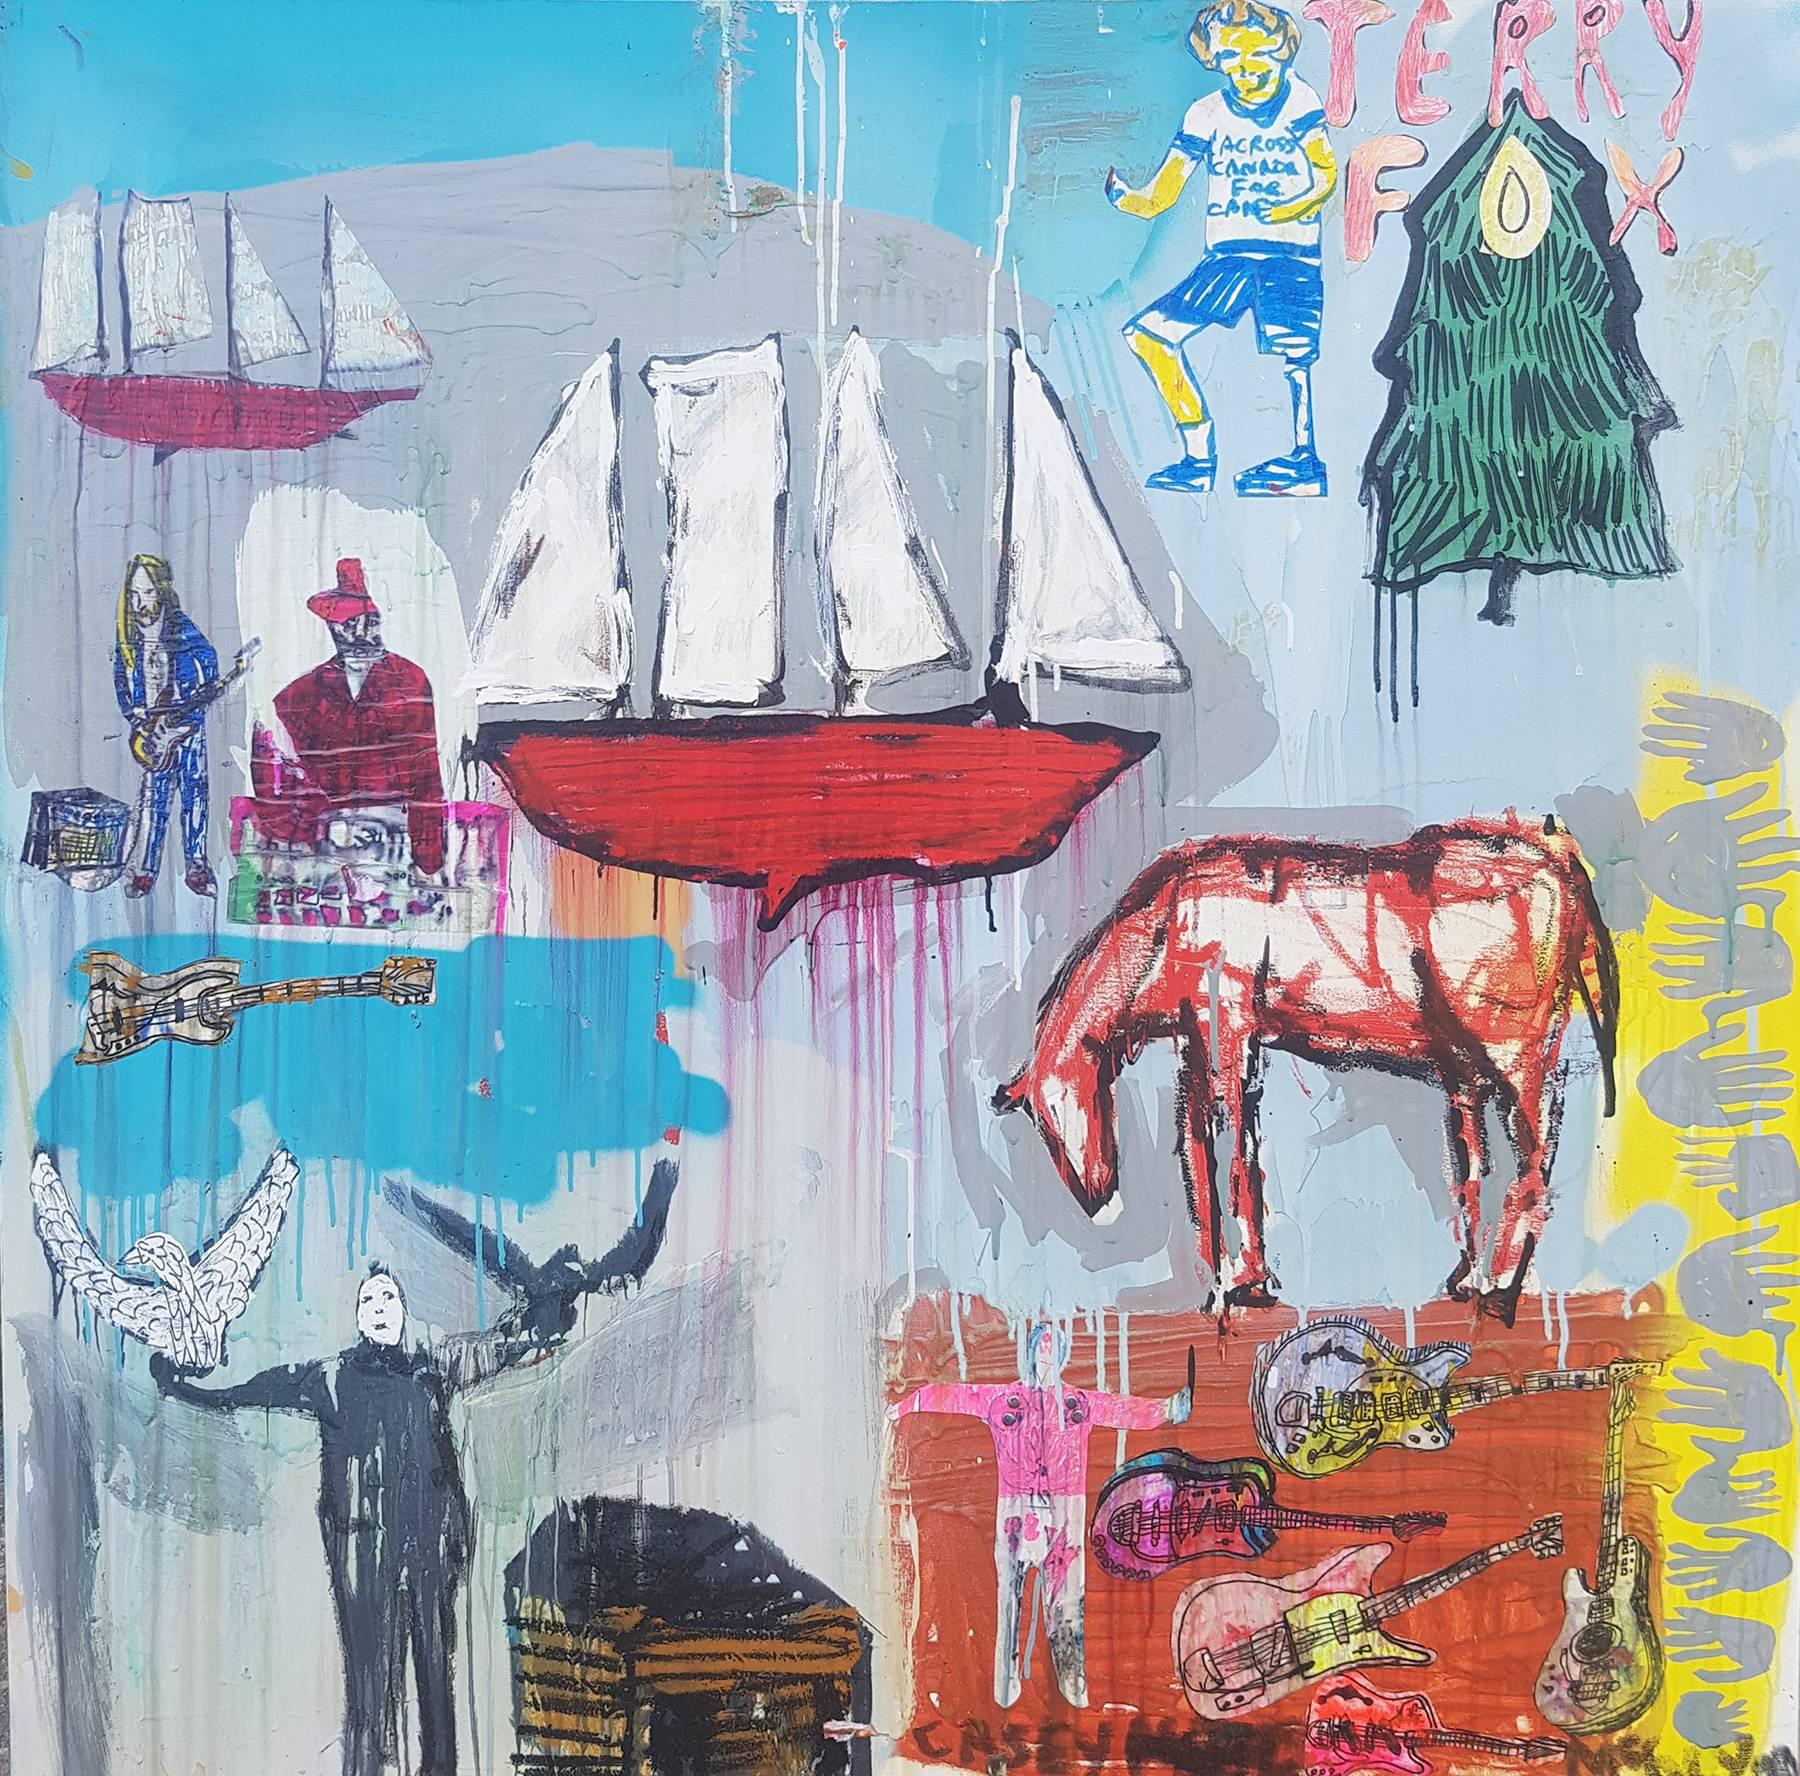 Leuchtend rotes Boot – Painting von Casey McGlynn